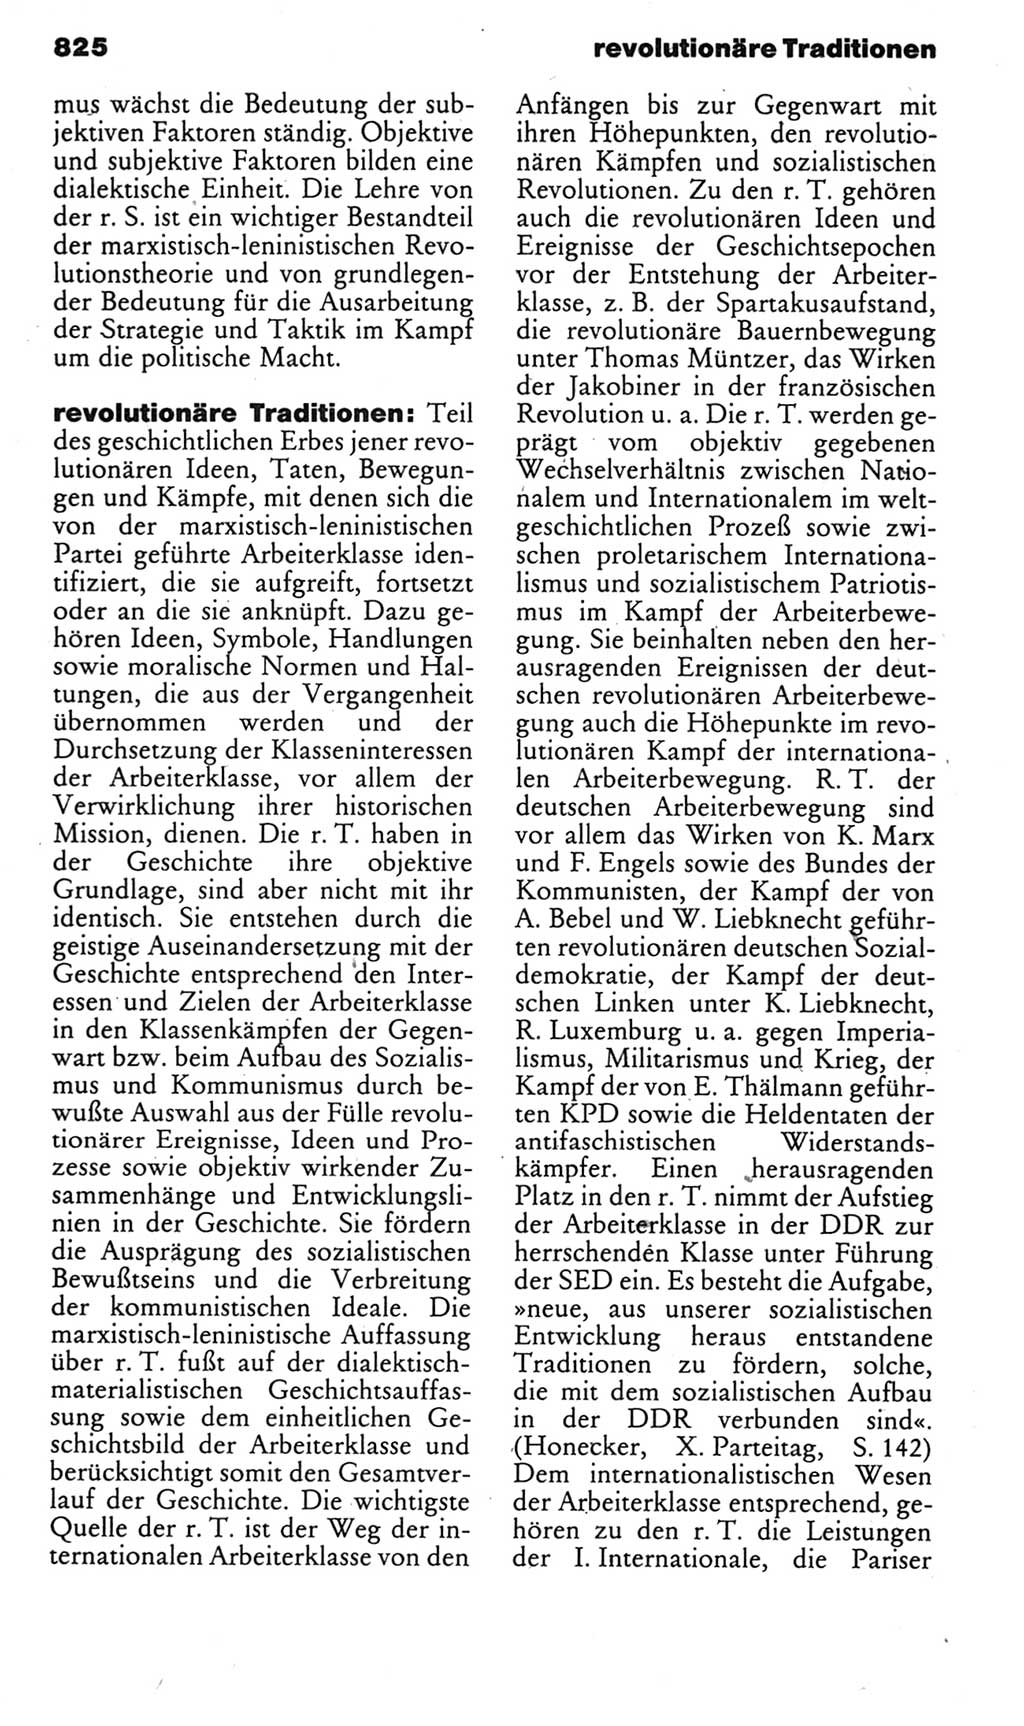 Kleines politisches Wörterbuch [Deutsche Demokratische Republik (DDR)] 1985, Seite 825 (Kl. pol. Wb. DDR 1985, S. 825)